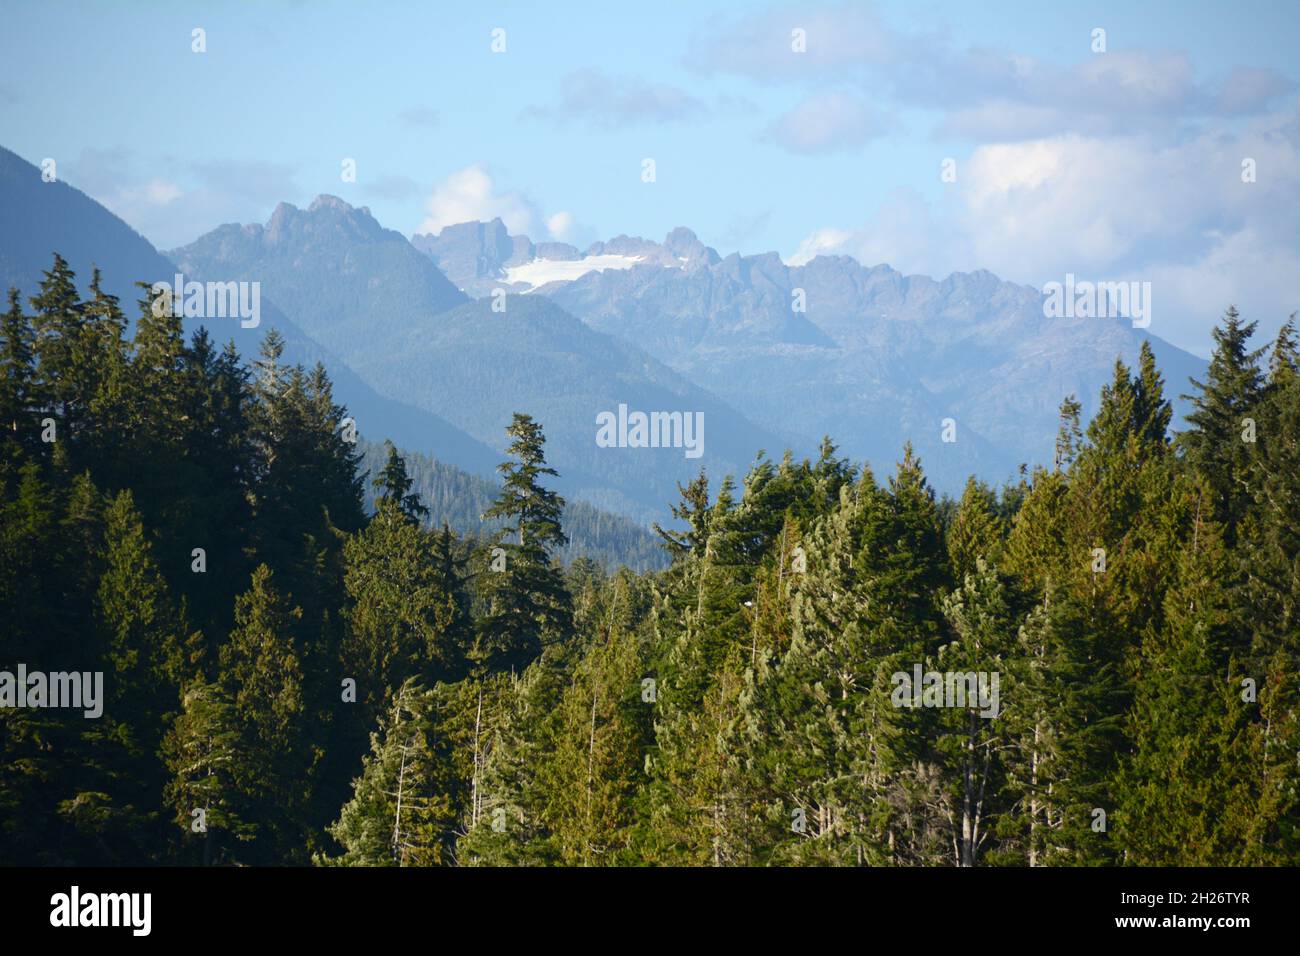 L'île Meares et les tourbières éloignées du parc provincial Strathcona, dans la baie Clayoquot, près de Tofino, île de Vancouver, Colombie-Britannique,Canada. Banque D'Images